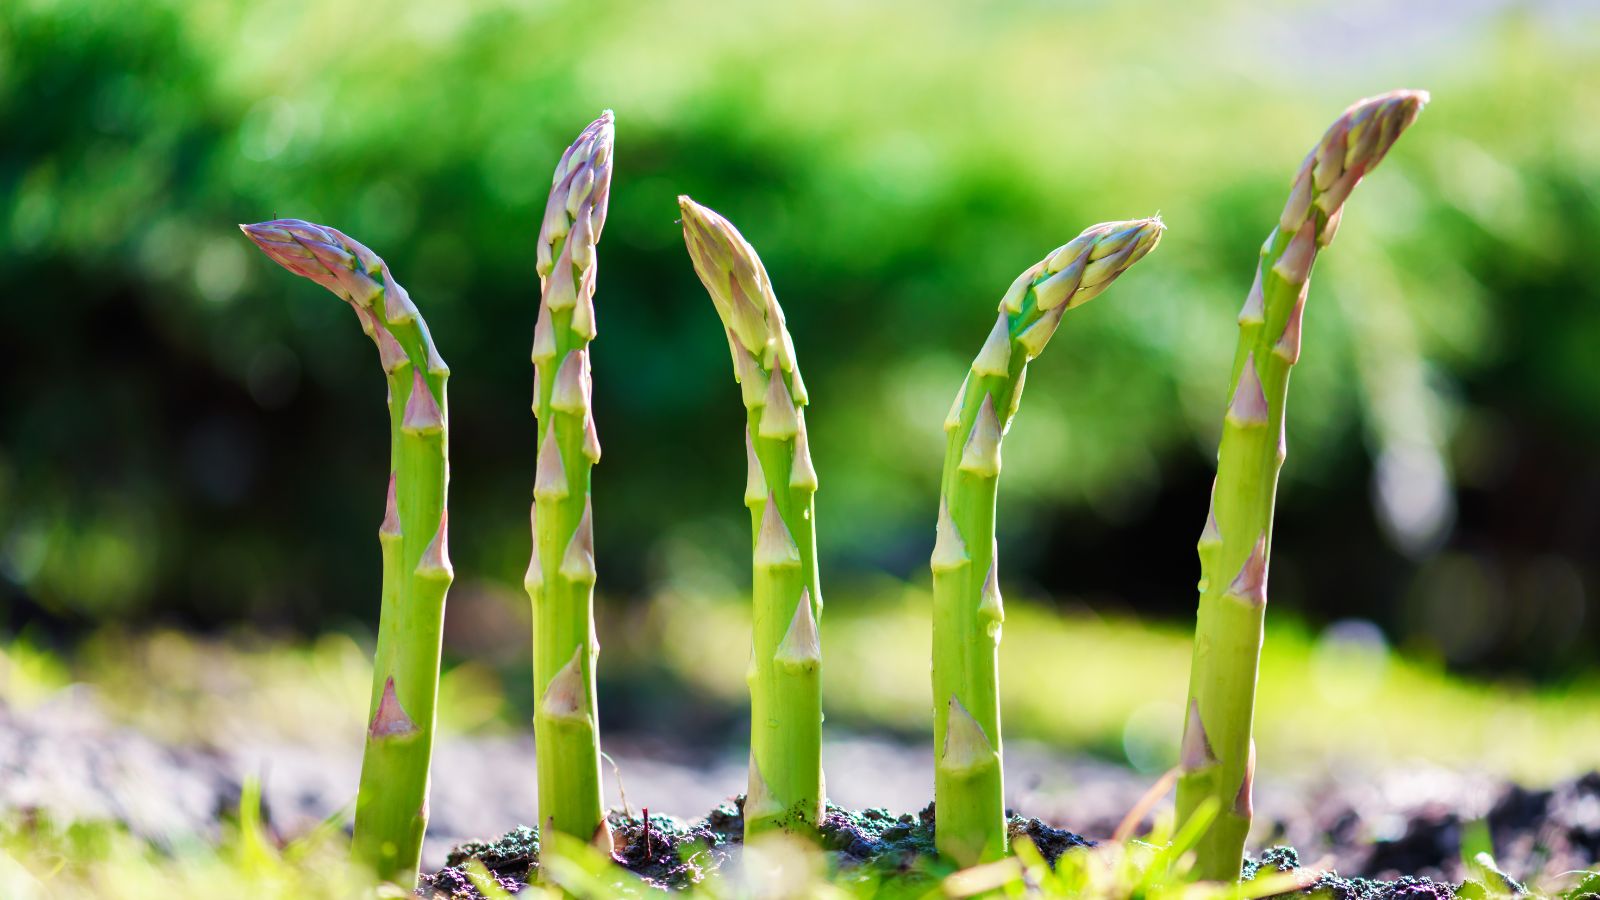 Asparagus growing in a garden.